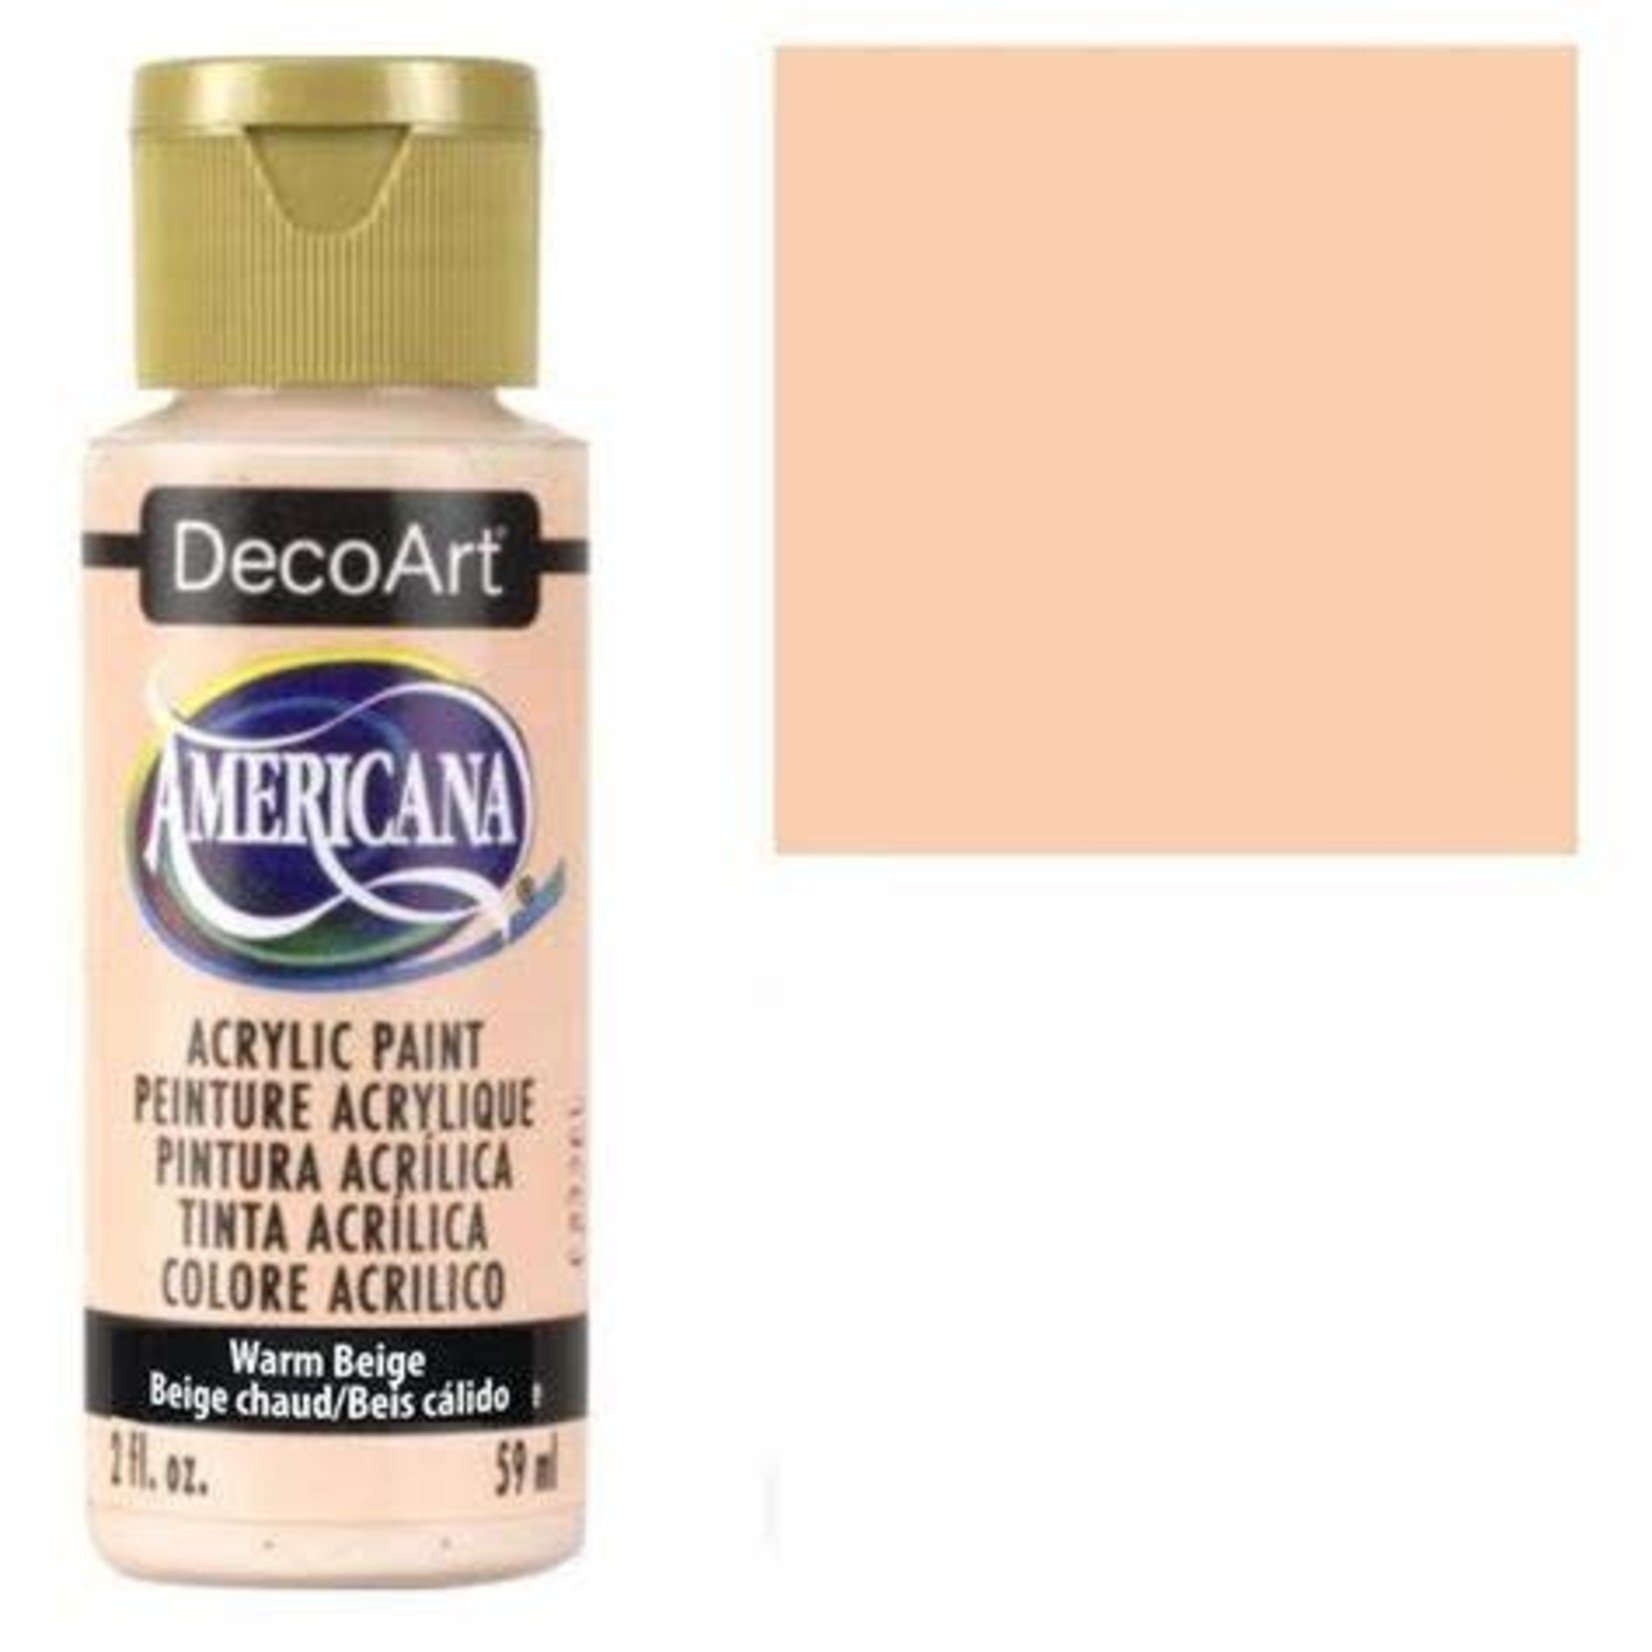 DecoArt Americana - Acrylic Paint - Warm Beige